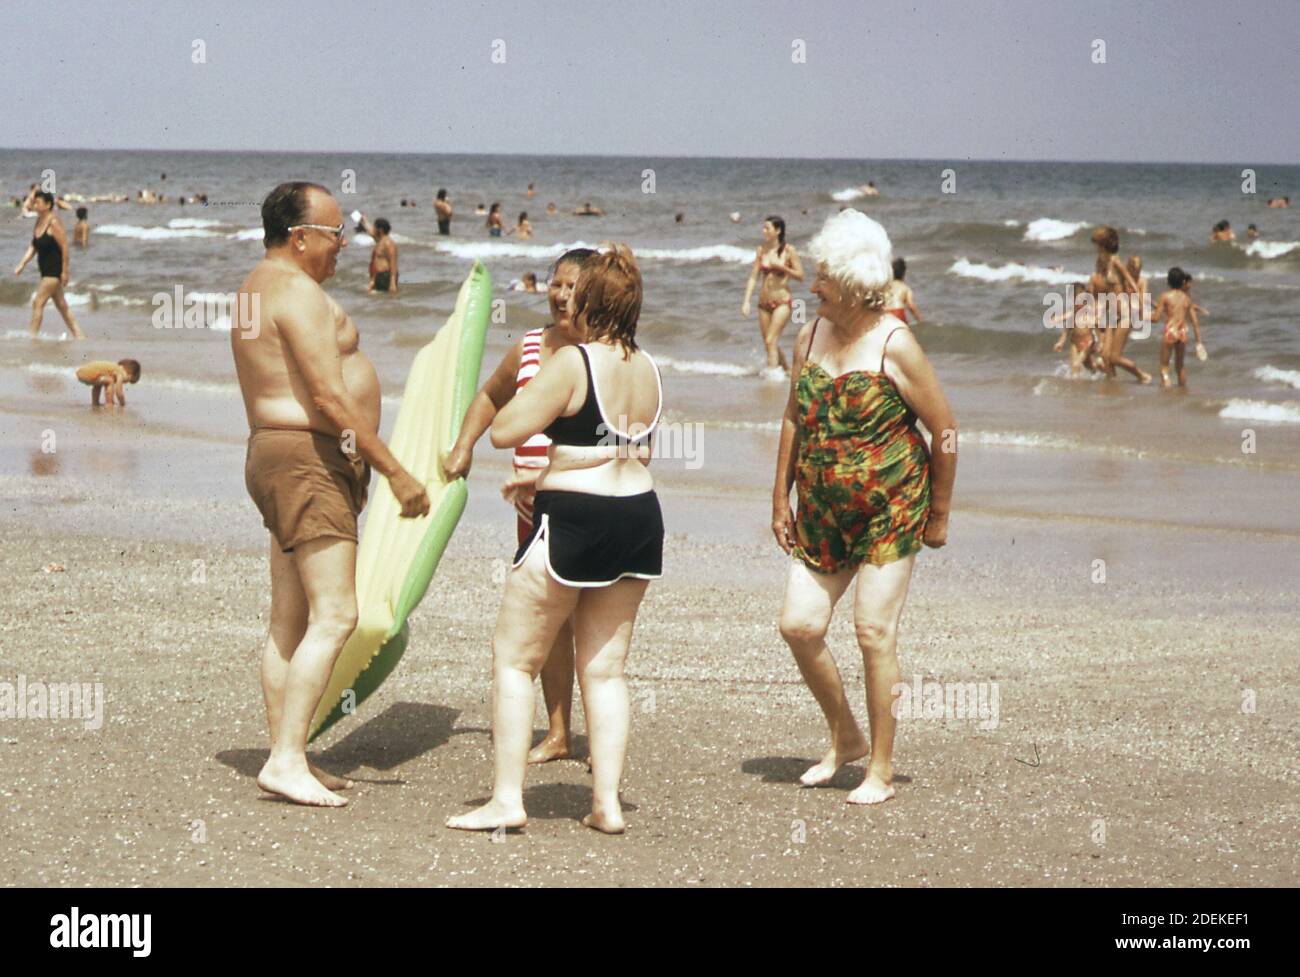 Foto der 1970er Jahre (1973) - Stewart Beach, am östlichen Ende der Galveston Insel, einer der beliebtesten Sommerspielplätze der Gegend" Stockfoto